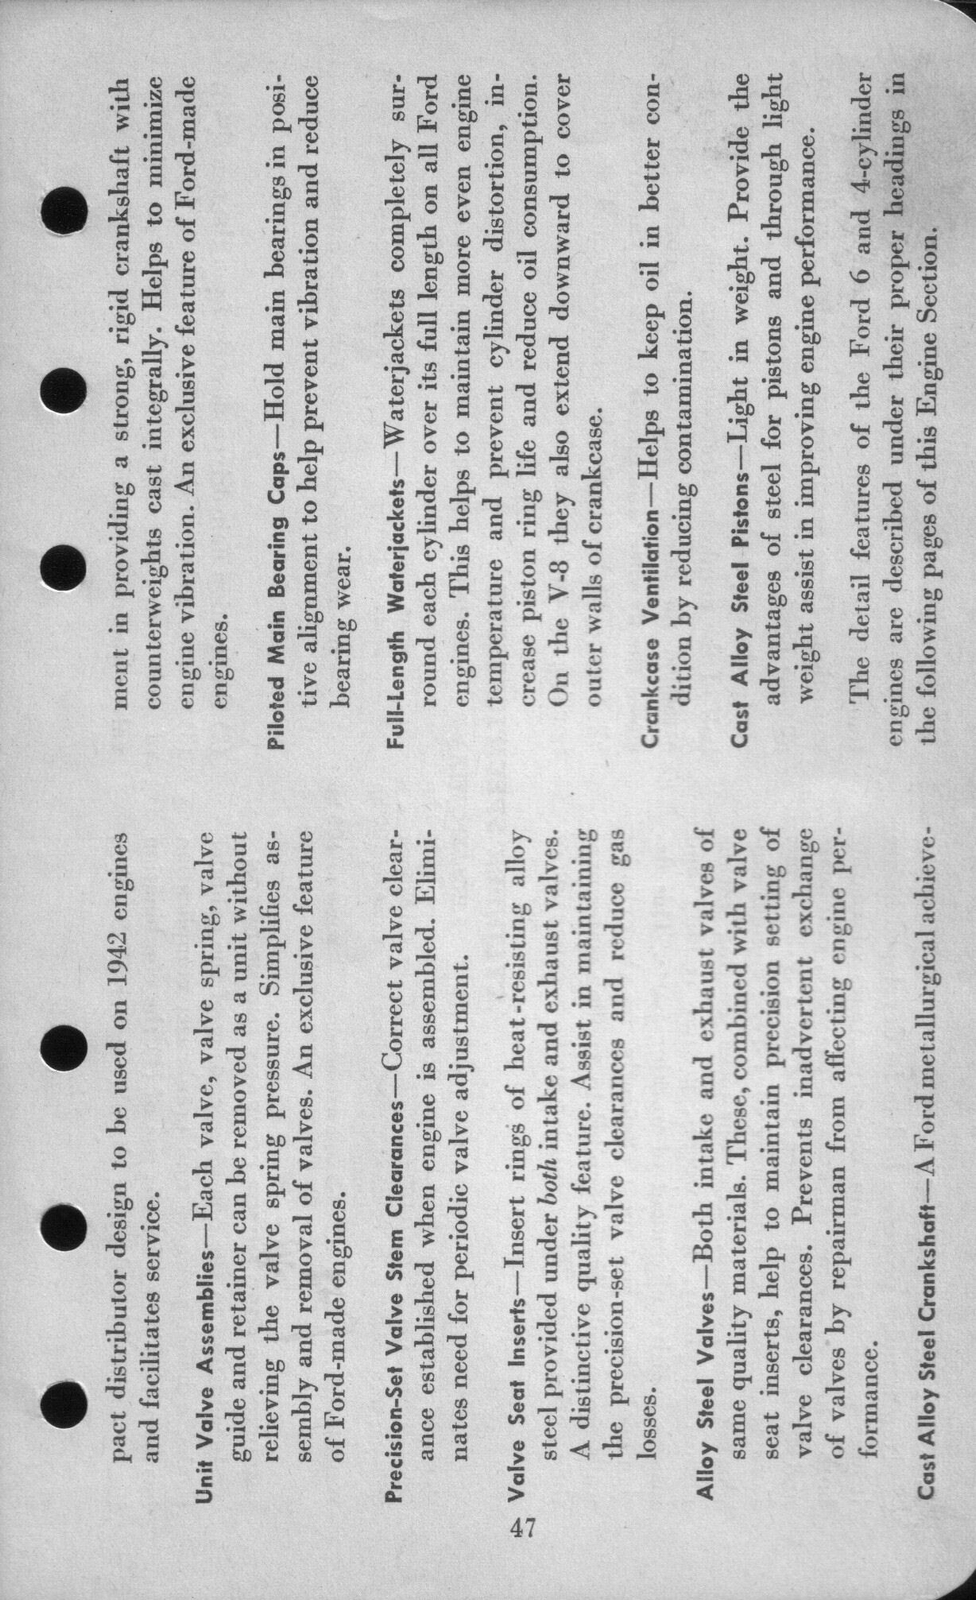 n_1942 Ford Salesmans Reference Manual-047.jpg